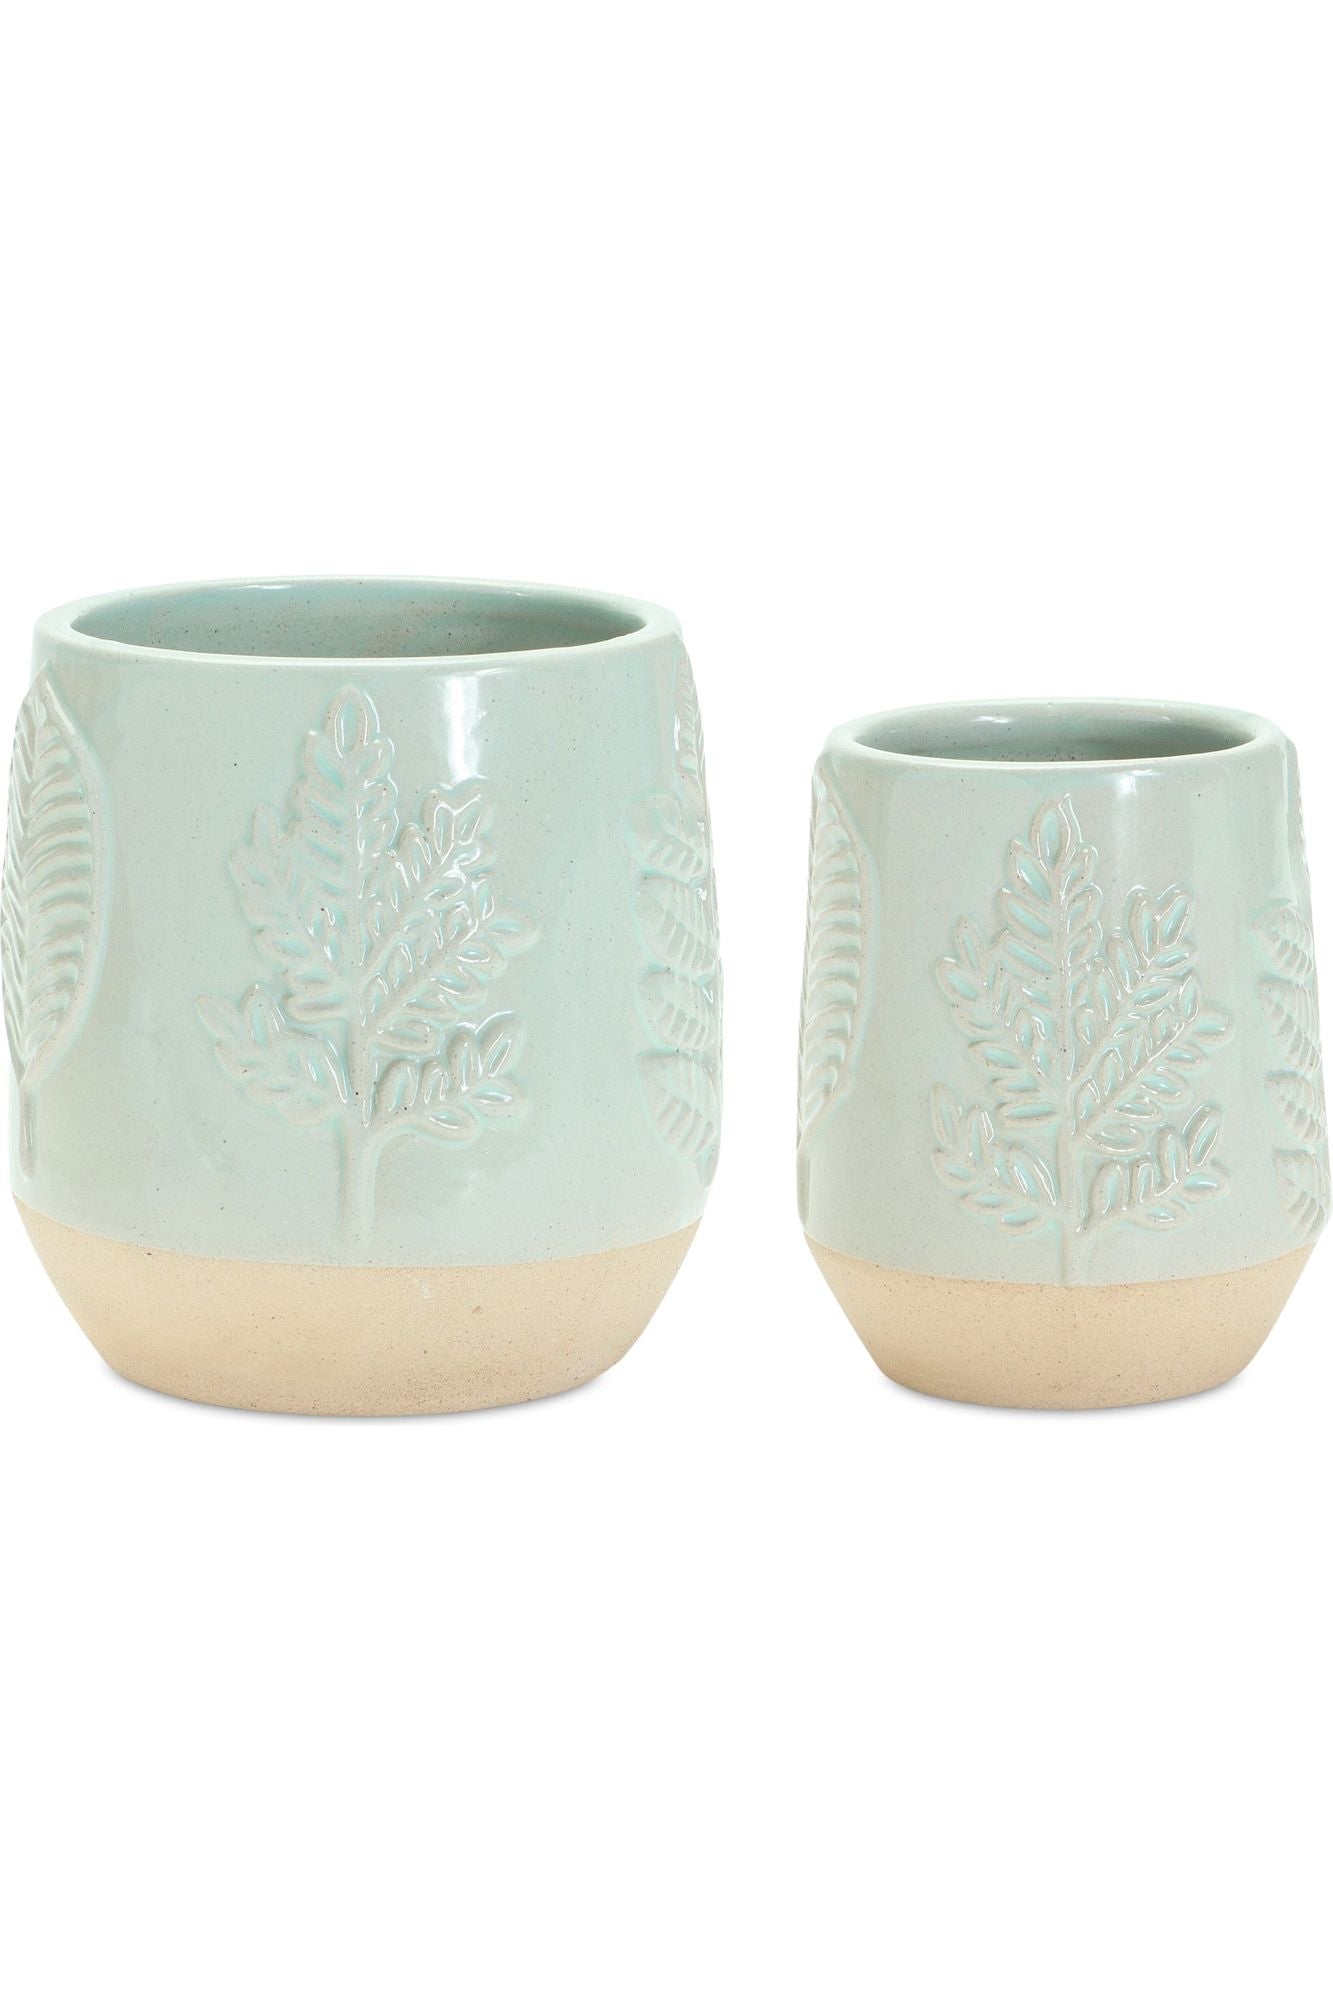 Shop For 5" Mint Green Leaf Design Planter Vases (Set of 2) 85942